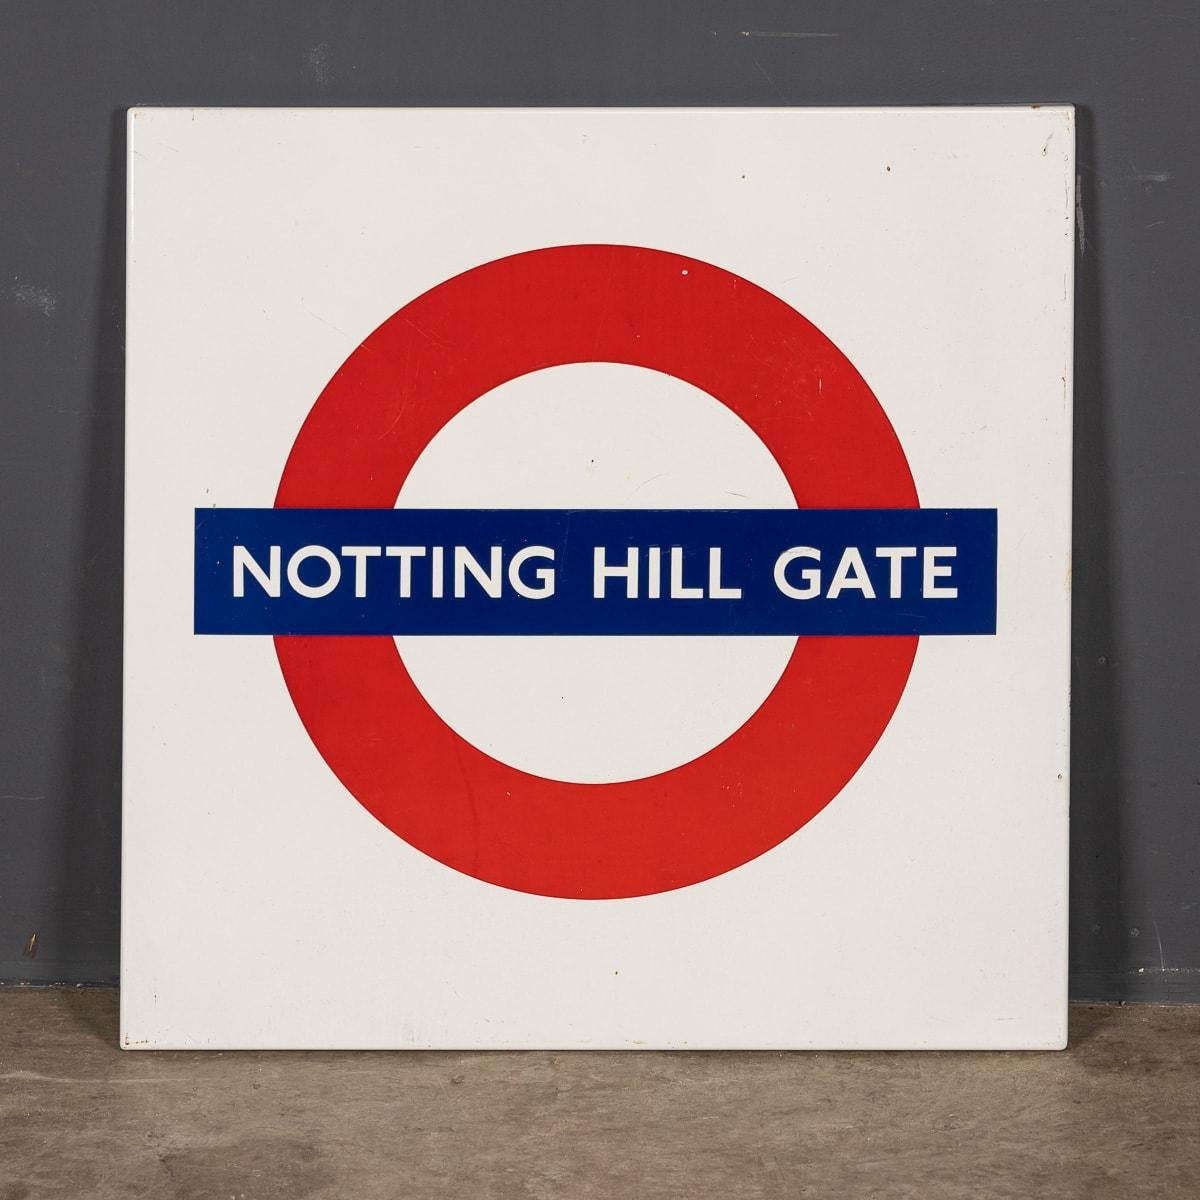 Ein hervorragendes emailliertes Londoner U-Bahn-Schild aus dem 20. Jahrhundert von Notting Hill Gate. Dieses in den 1970er Jahren geschaffene Schild wurde auf dem Bahnsteig angebracht, um ankommende Fahrgäste darüber zu informieren, in welchen